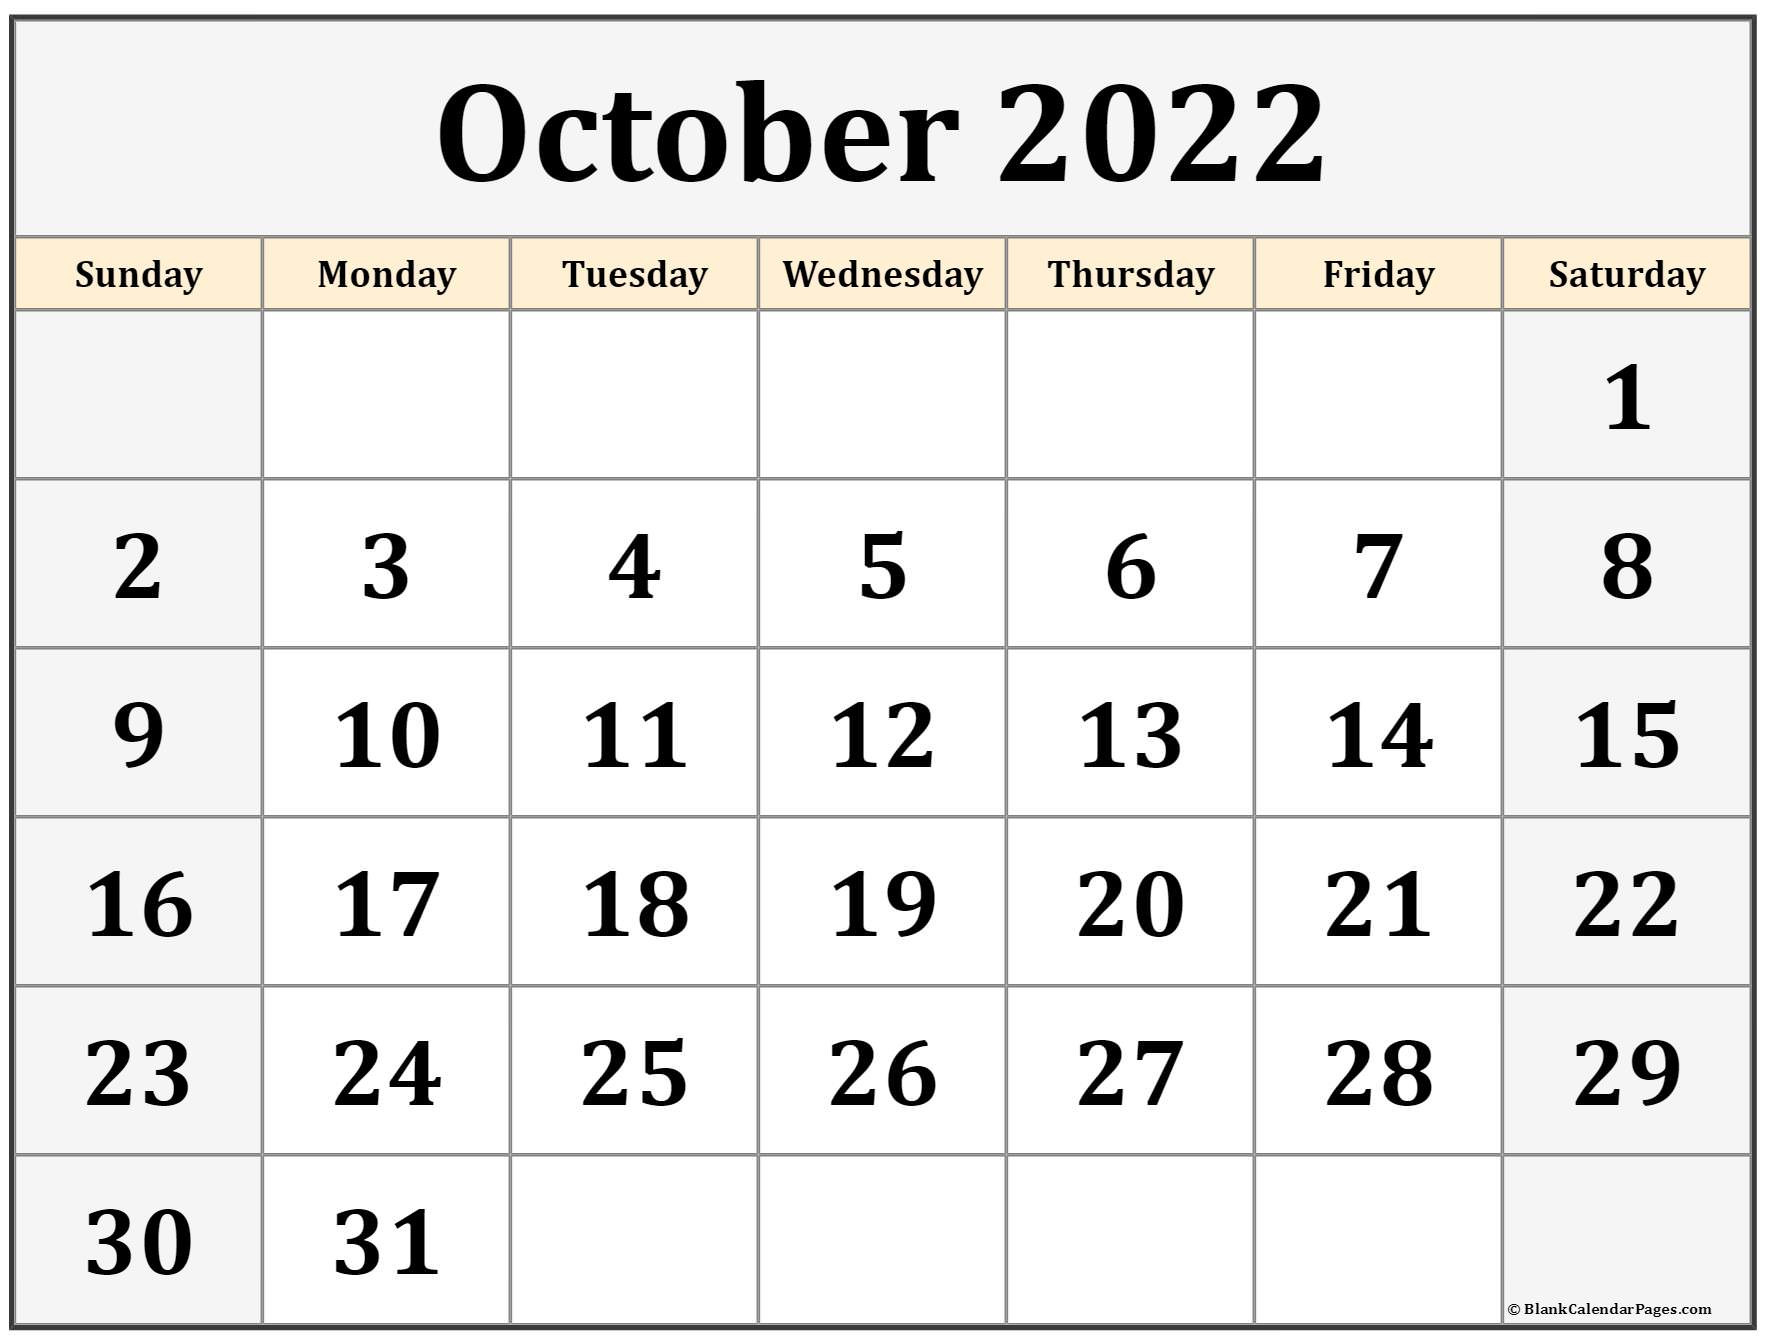 October 2022 Calendar | Free Printable Calendar Templates-Printable Monthly Calendar 2022 Canada